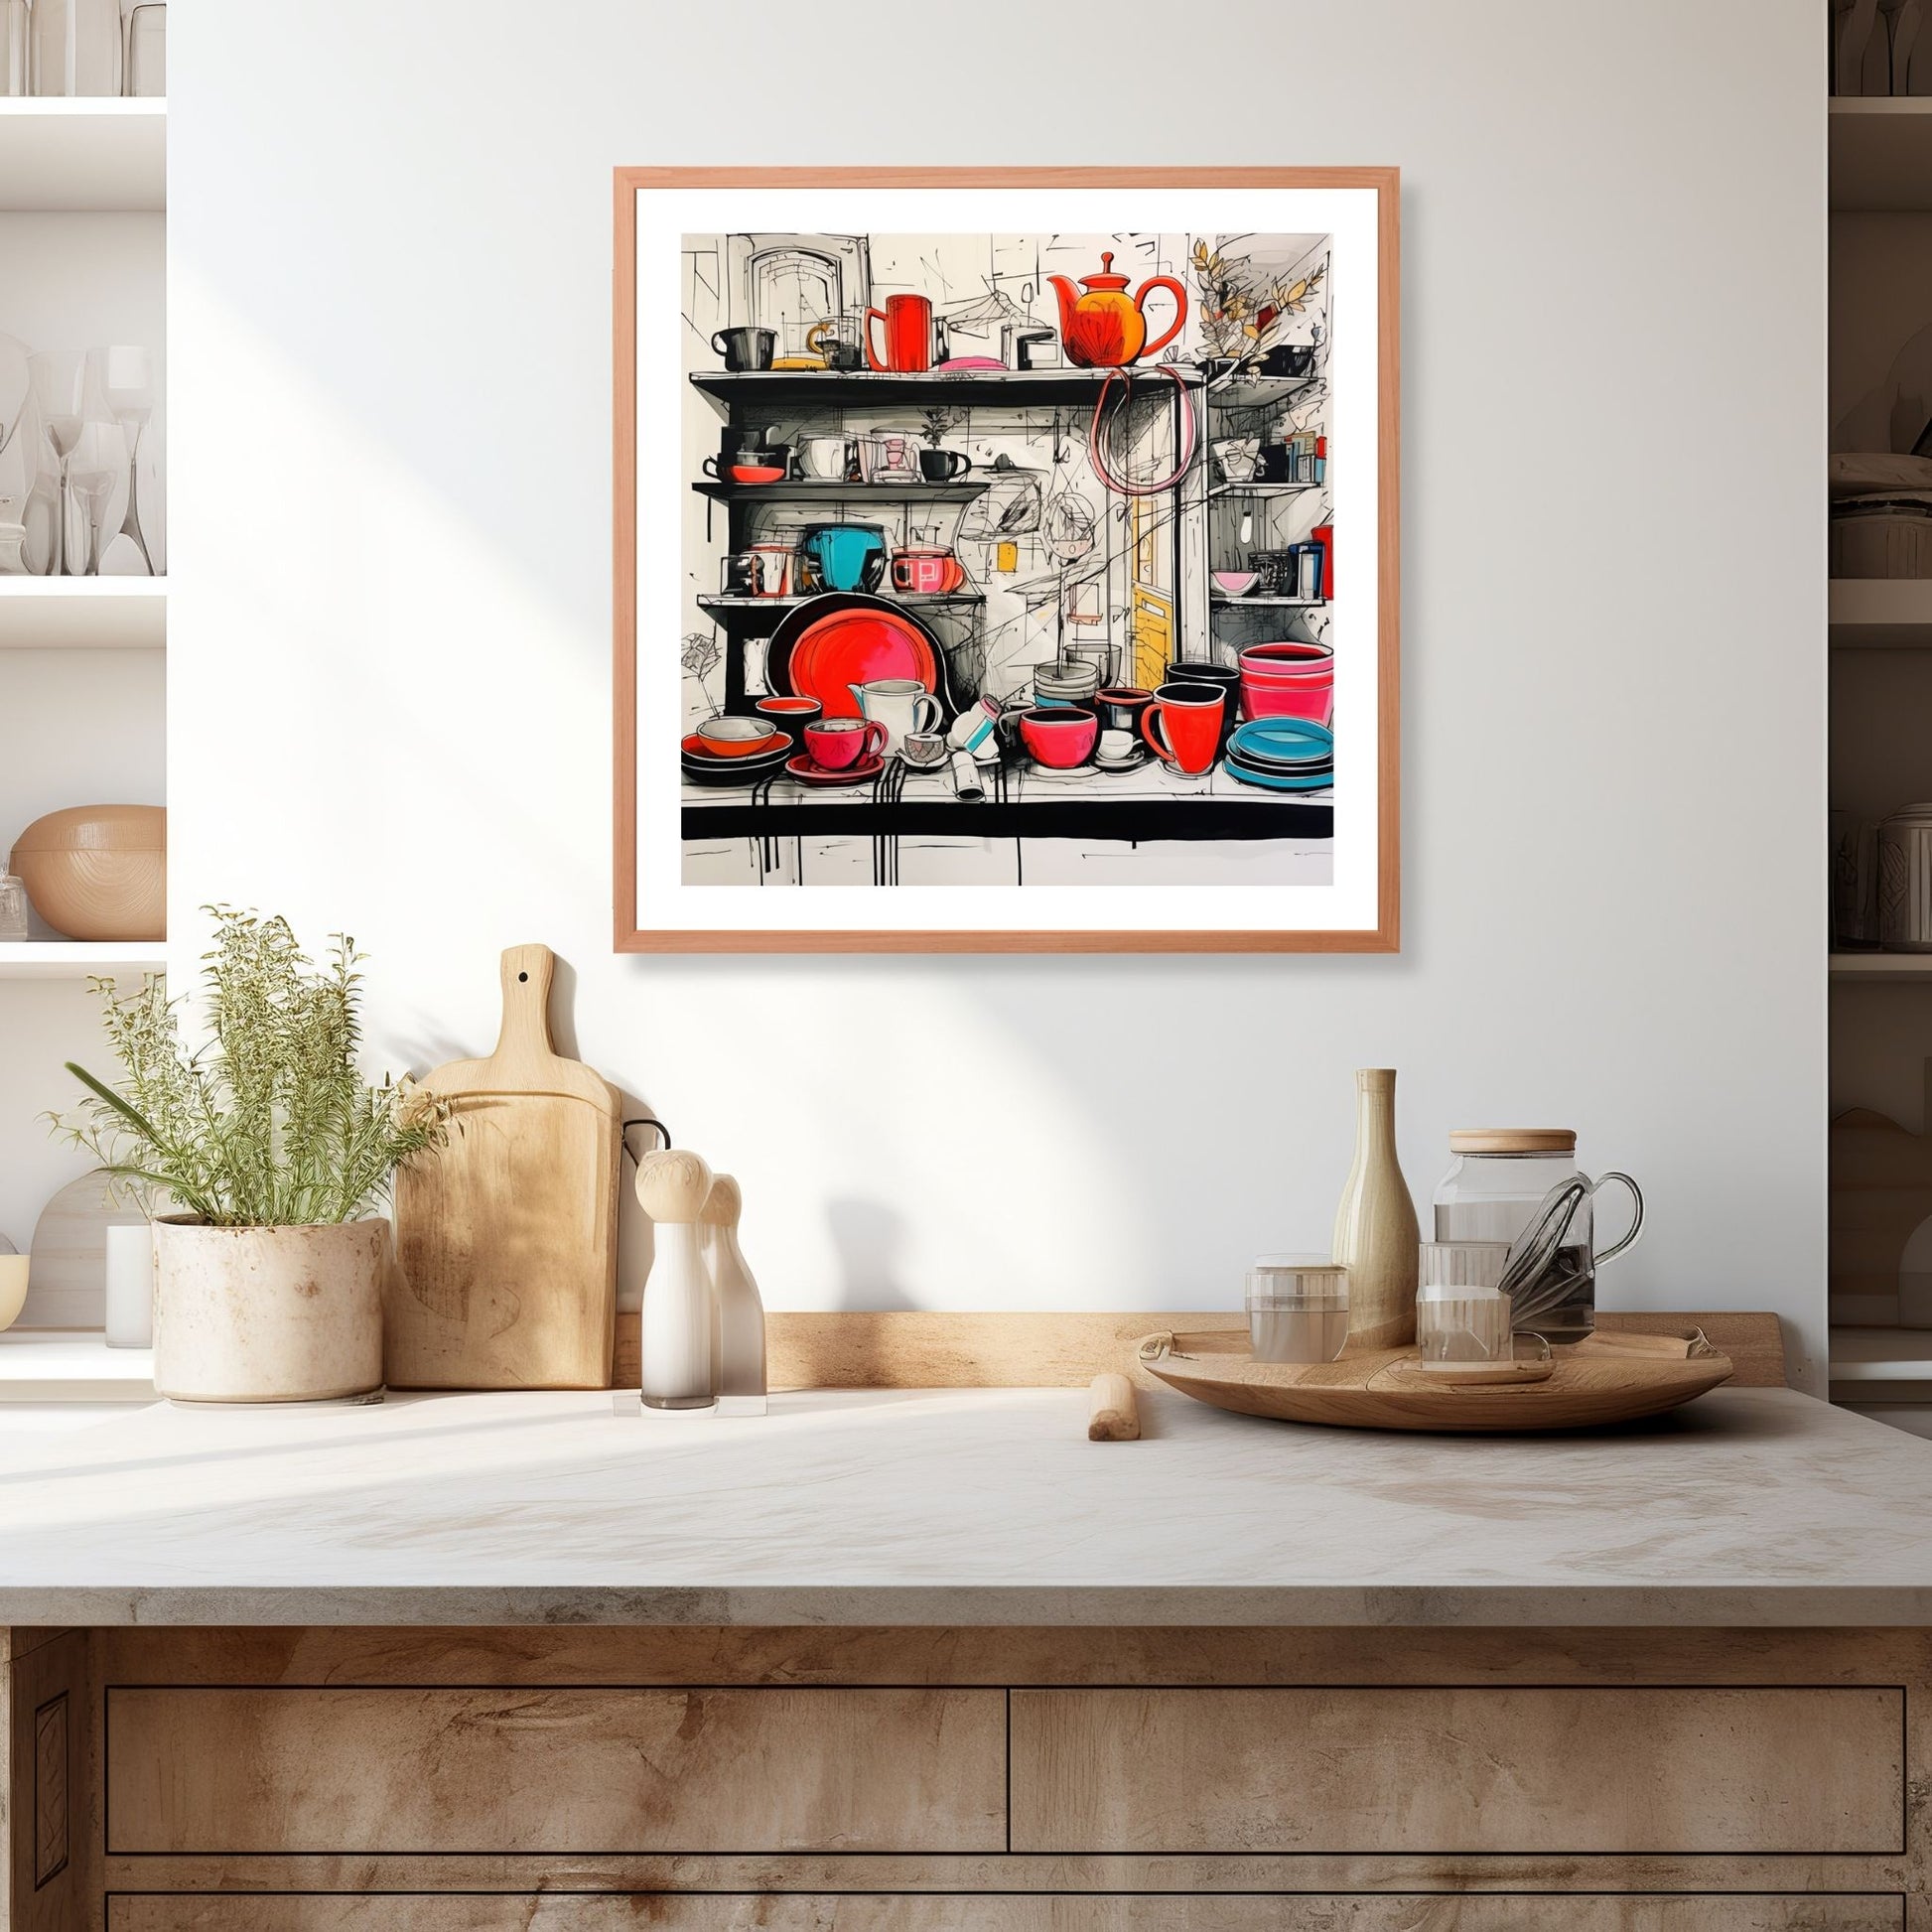 Grafisk, fargerik illustrasjon som viser en sjarmerende kjøkkenhylle fylt med kopper og tallerkener, skapt med en unik håndtegnet stil. Illustrasjonen viser motivet som plakat i ramme som henger over en kjøkkenbenk.